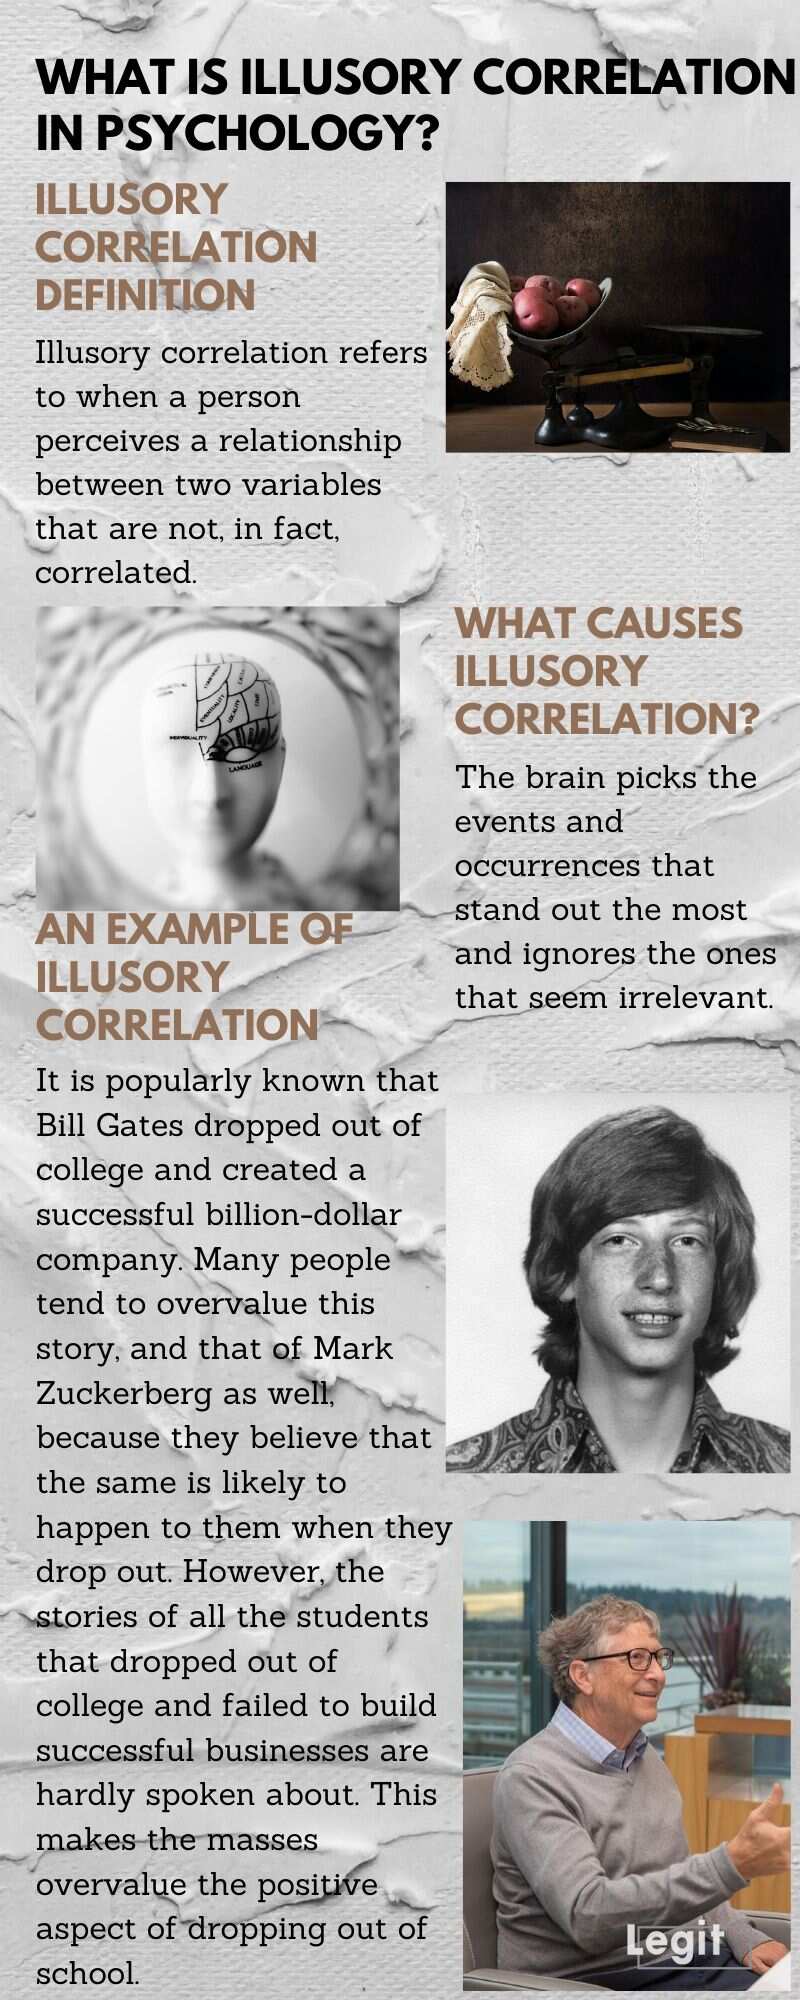 illusory correlation